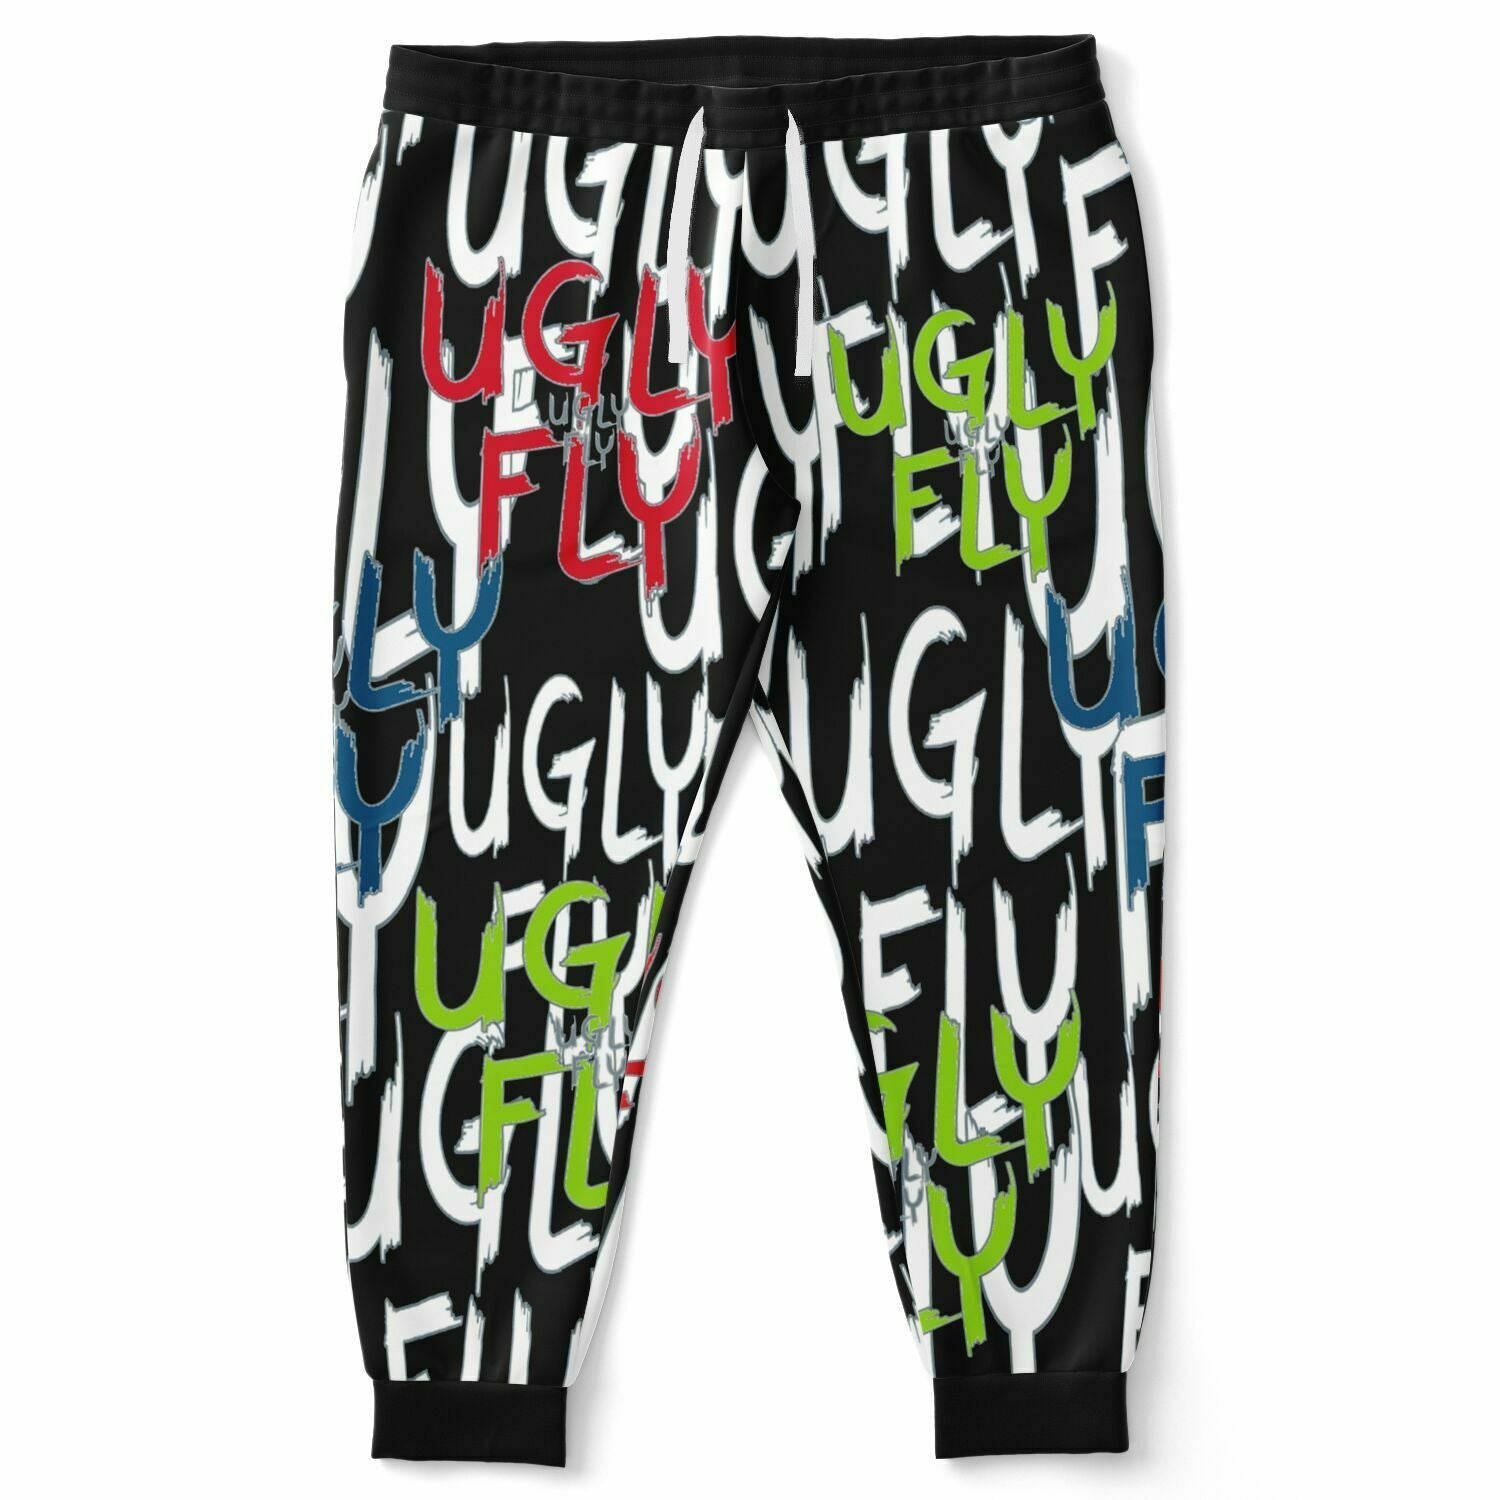 6XL - Ugly Fly Premium Fashion Voluptuous (+) Plus-size Jogger - Fashion Plus-size Jogger - AOP at TFC&H Co.